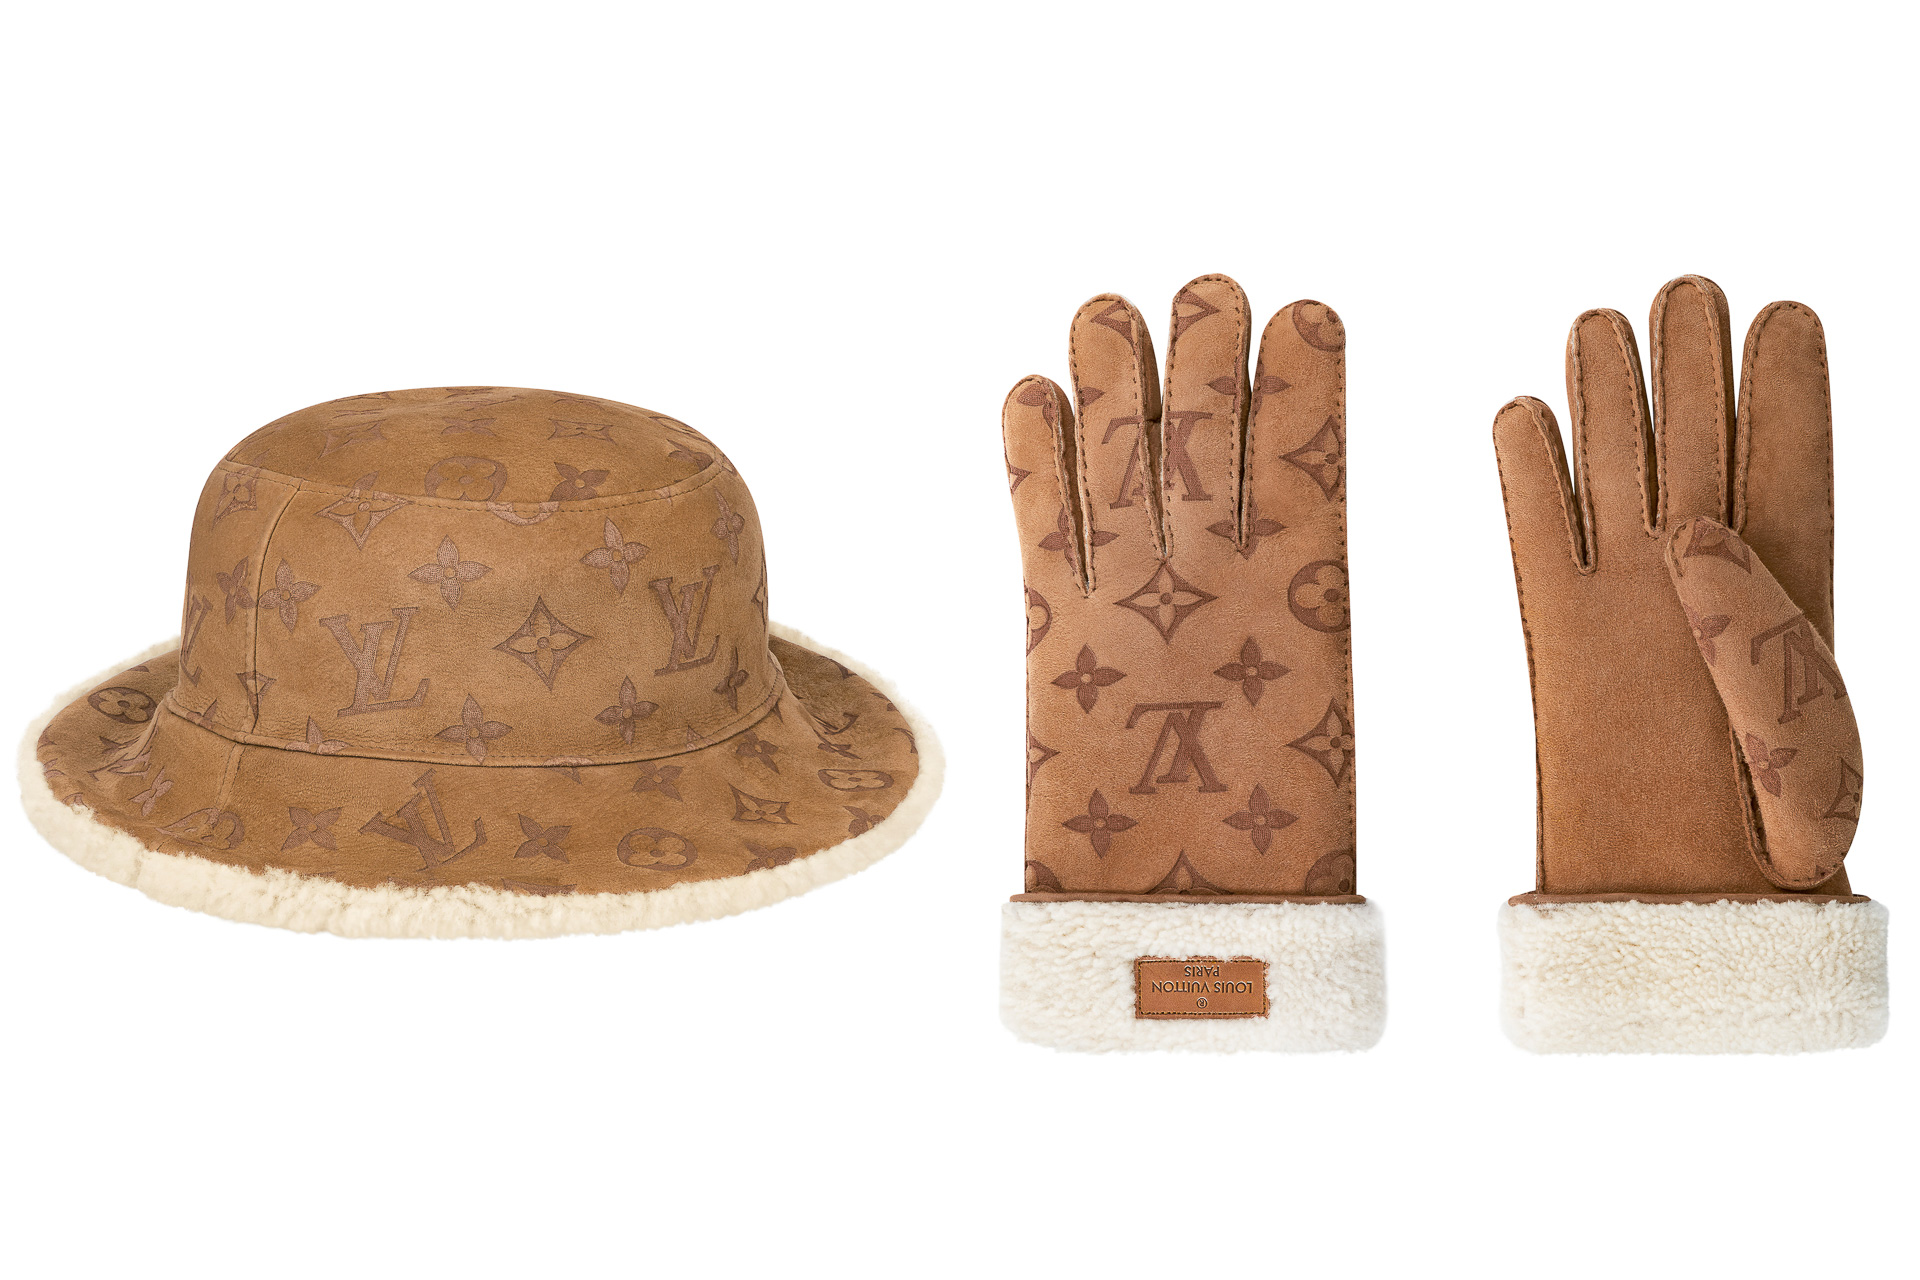 ルイ・ヴィトン、“モノグラム”モチーフの帽子と手袋。12月11日発売